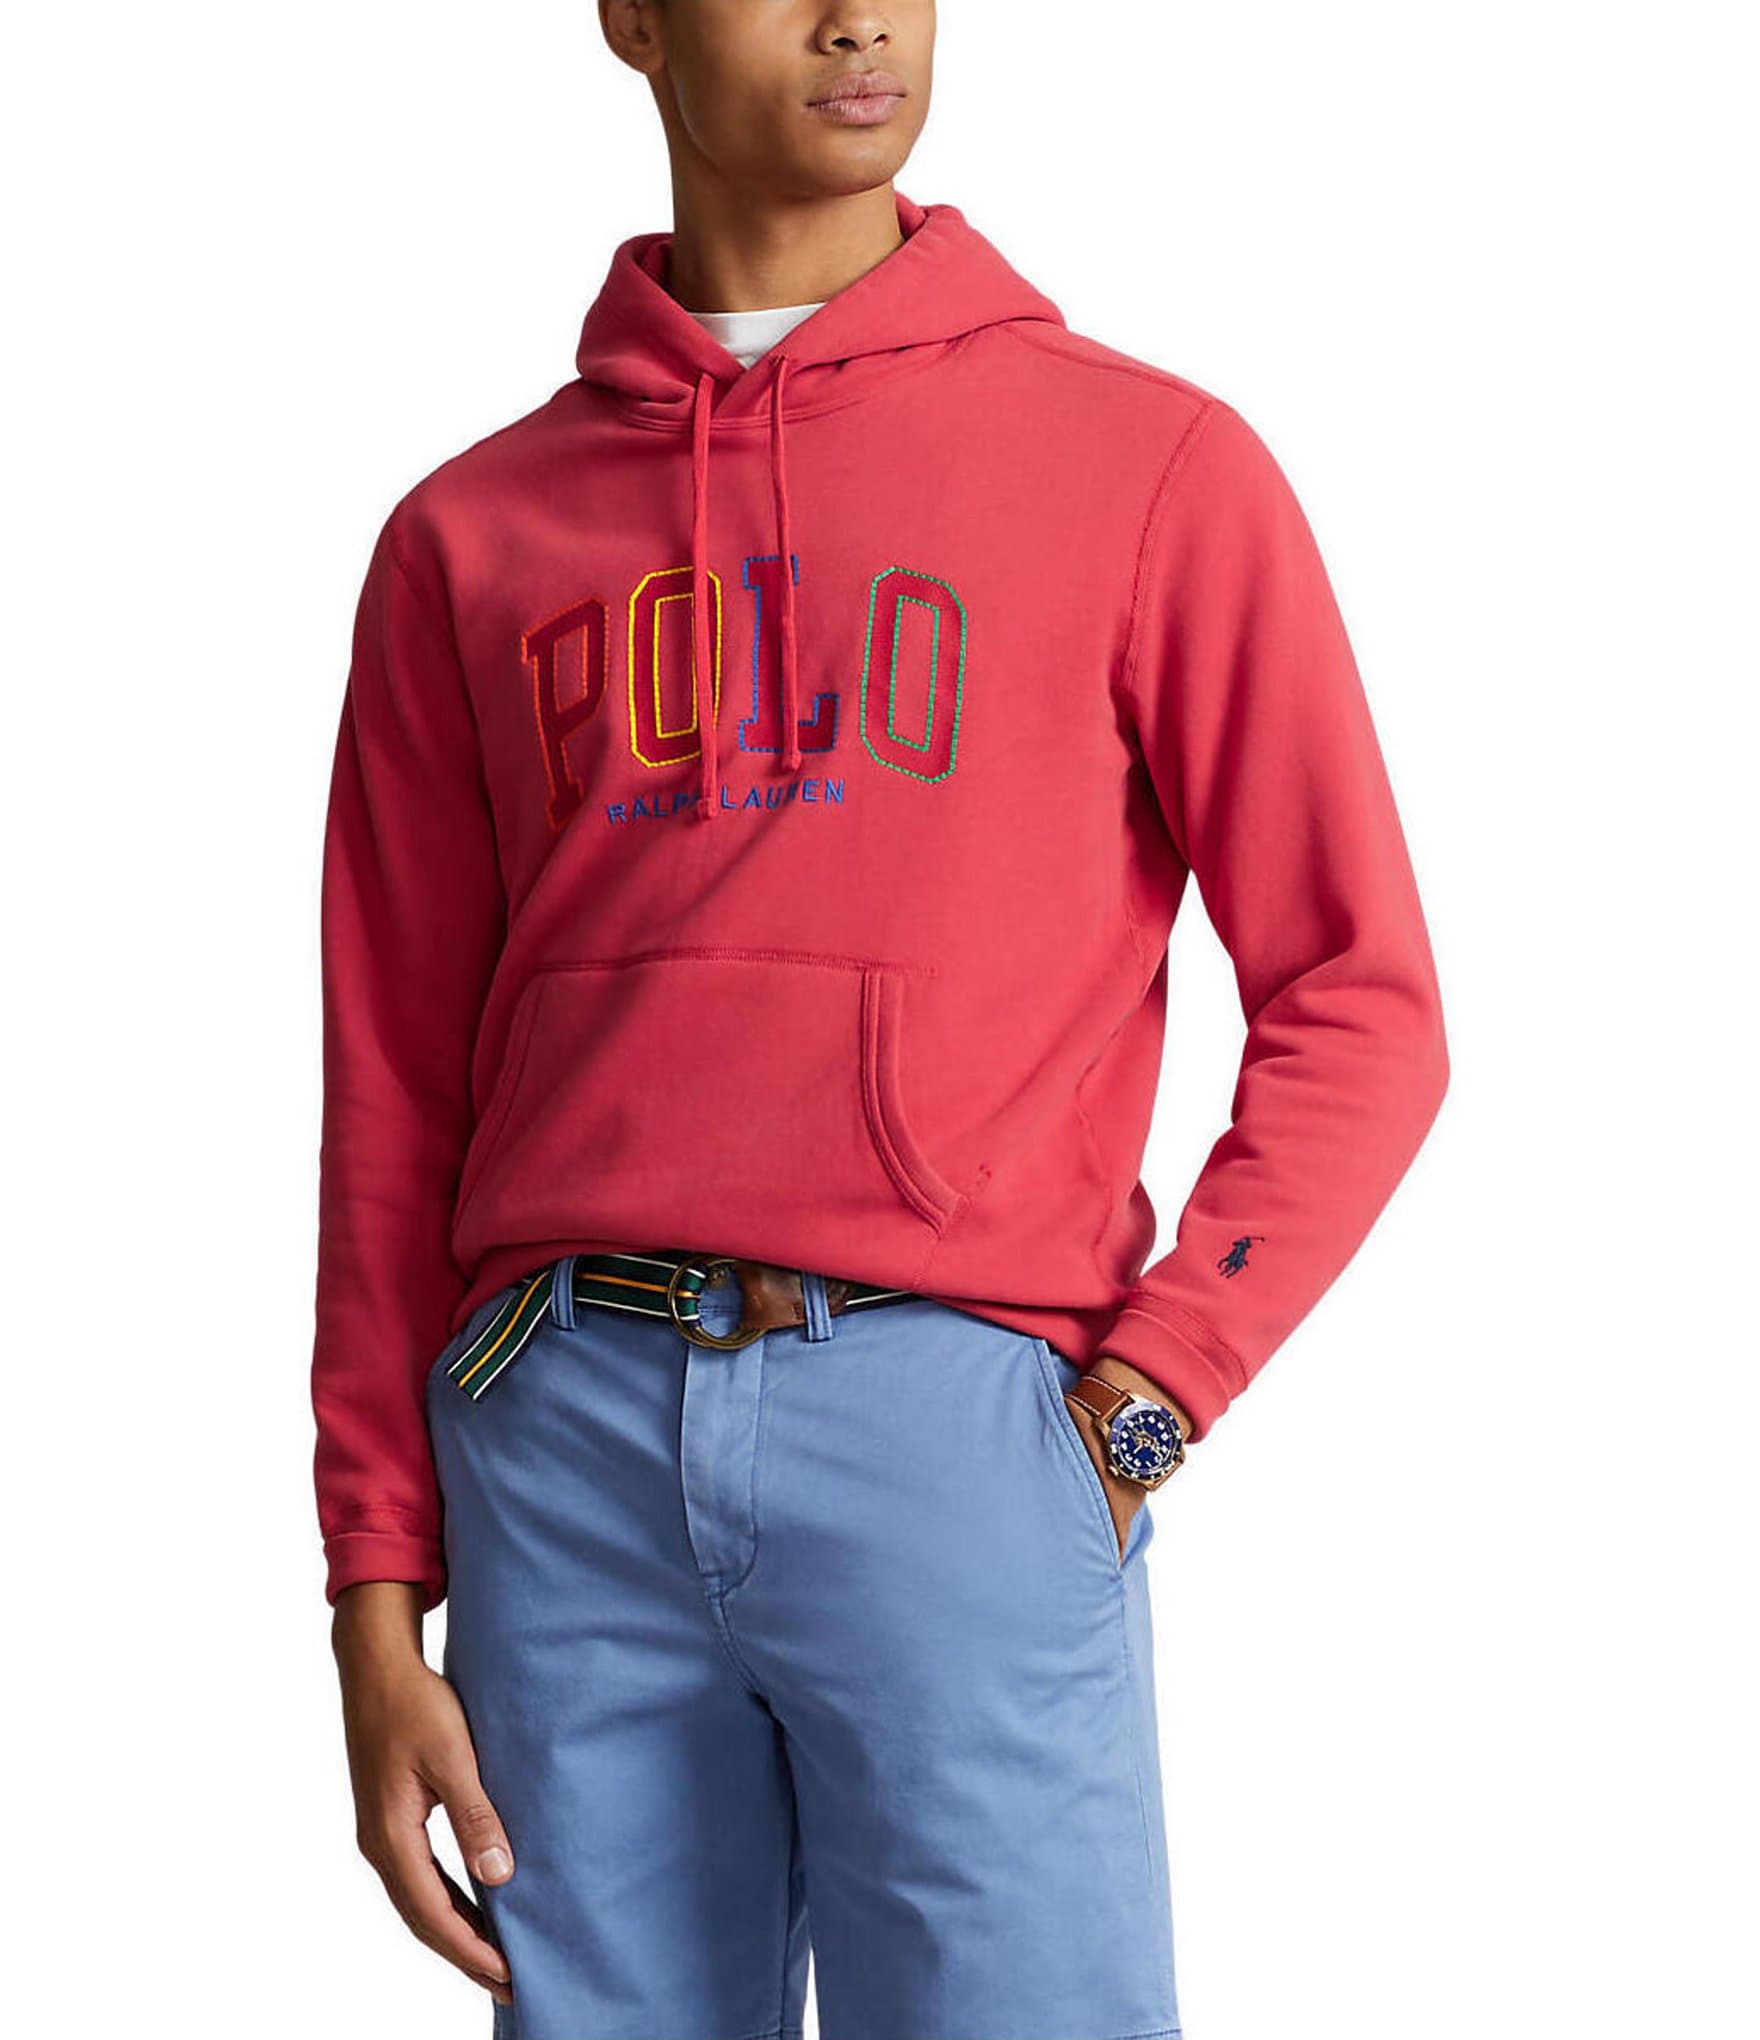 Polo Ralph Lauren Men's Hoodies & Sweatshirts